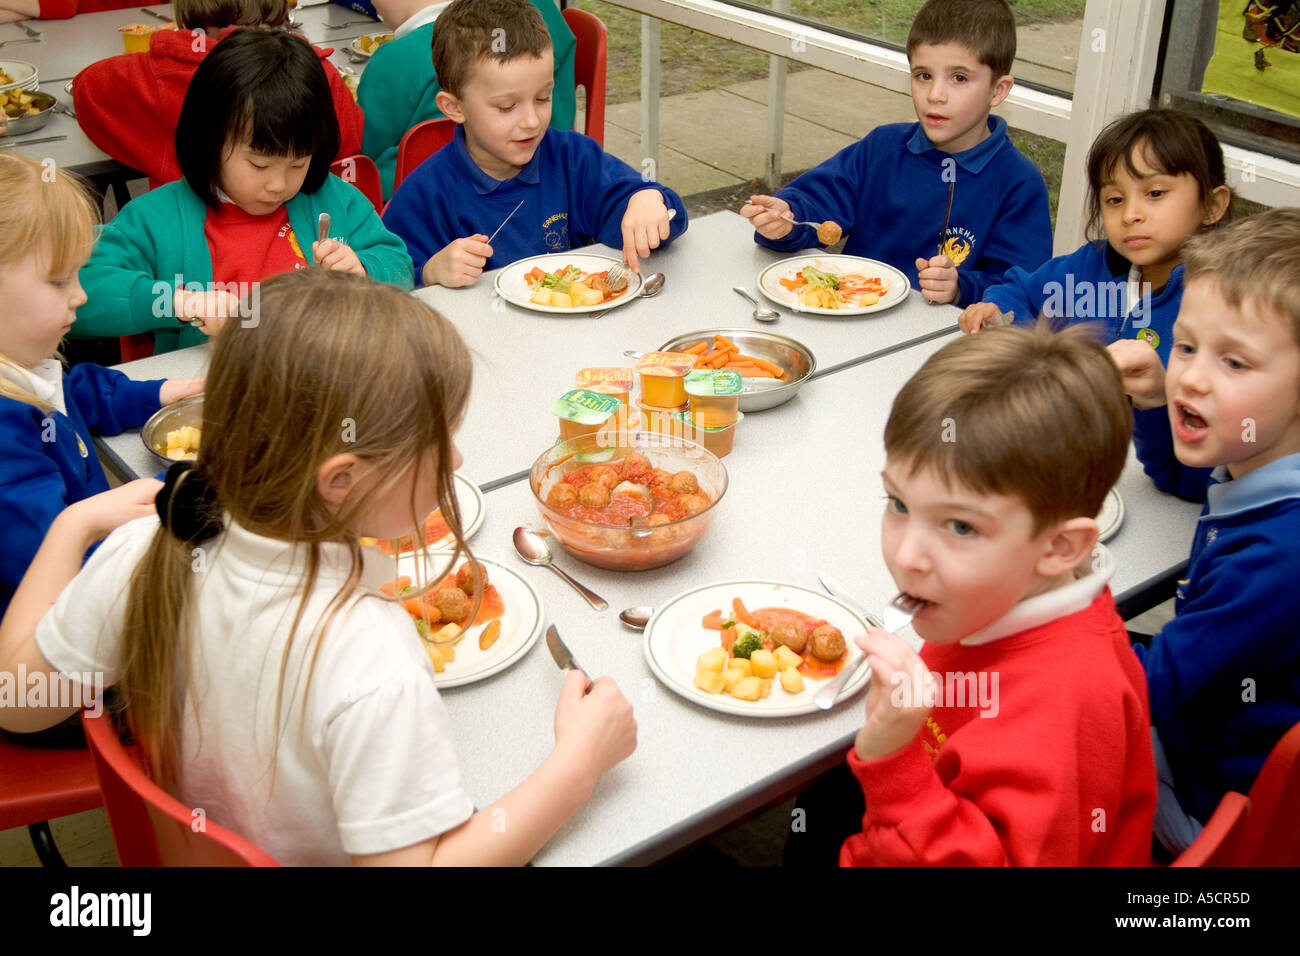 https://c8.alamy.com/comp/A5CR5D/junior-school-children-eating-a-healthy-lunch-A5CR5D.jpg